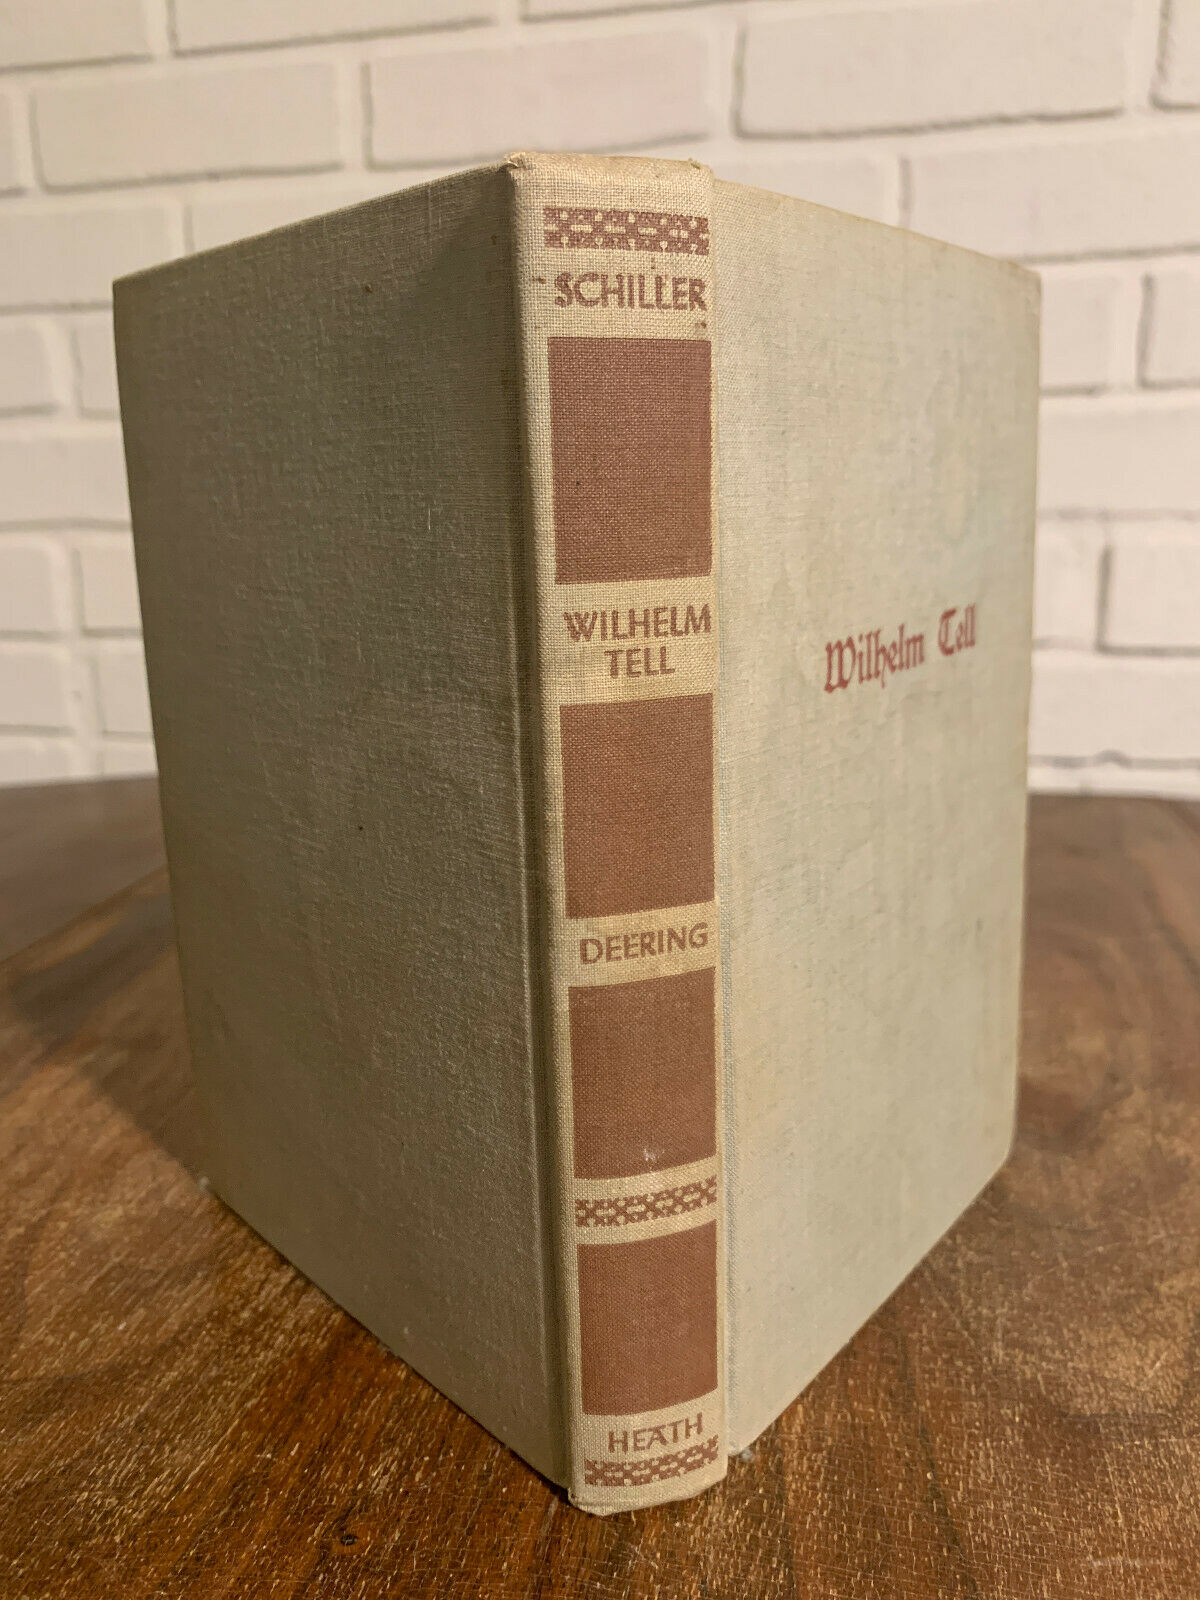 Wilhelm Tell, In German, by Friedrich Schiller, Edited by Robert Deering (Z1)